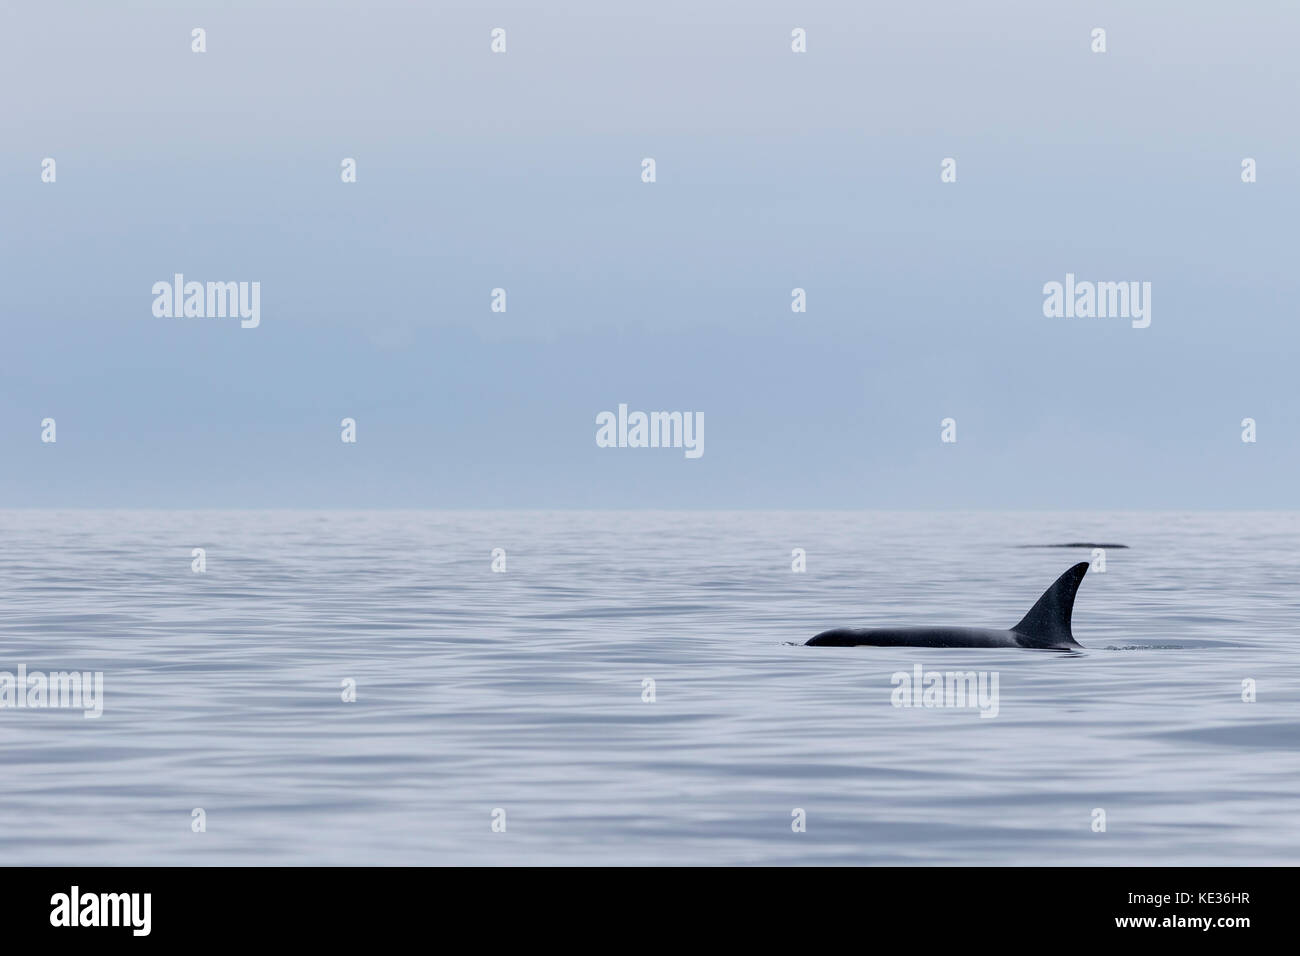 Un résident du nord30 killer whale (Orcinus orca) qui voyagent à travers le brouillard dans le détroit de la Reine-Charlotte au large du nord de l'île de Vancouver, Colombie-Britannique, Canada. Banque D'Images